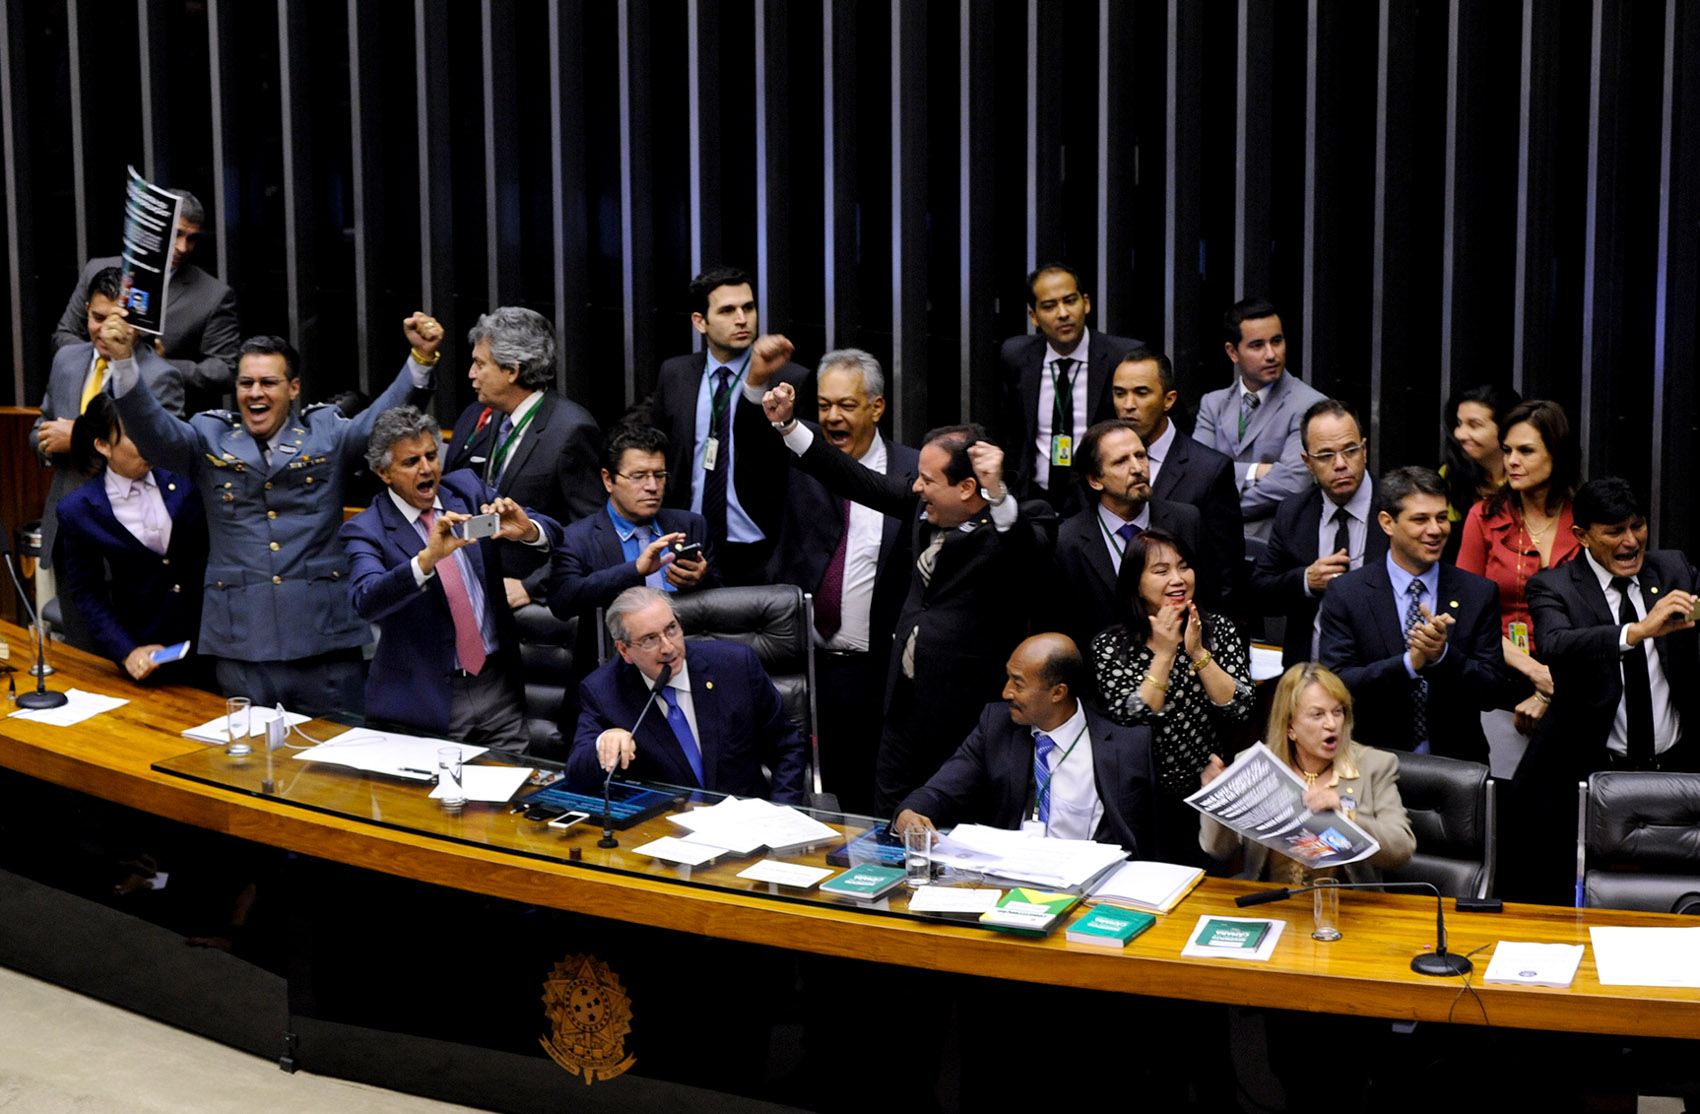 Deputados comemoram aprovação da redução da maioridade penal em 2ª votação na Câmara dos Deputados, em Brasília